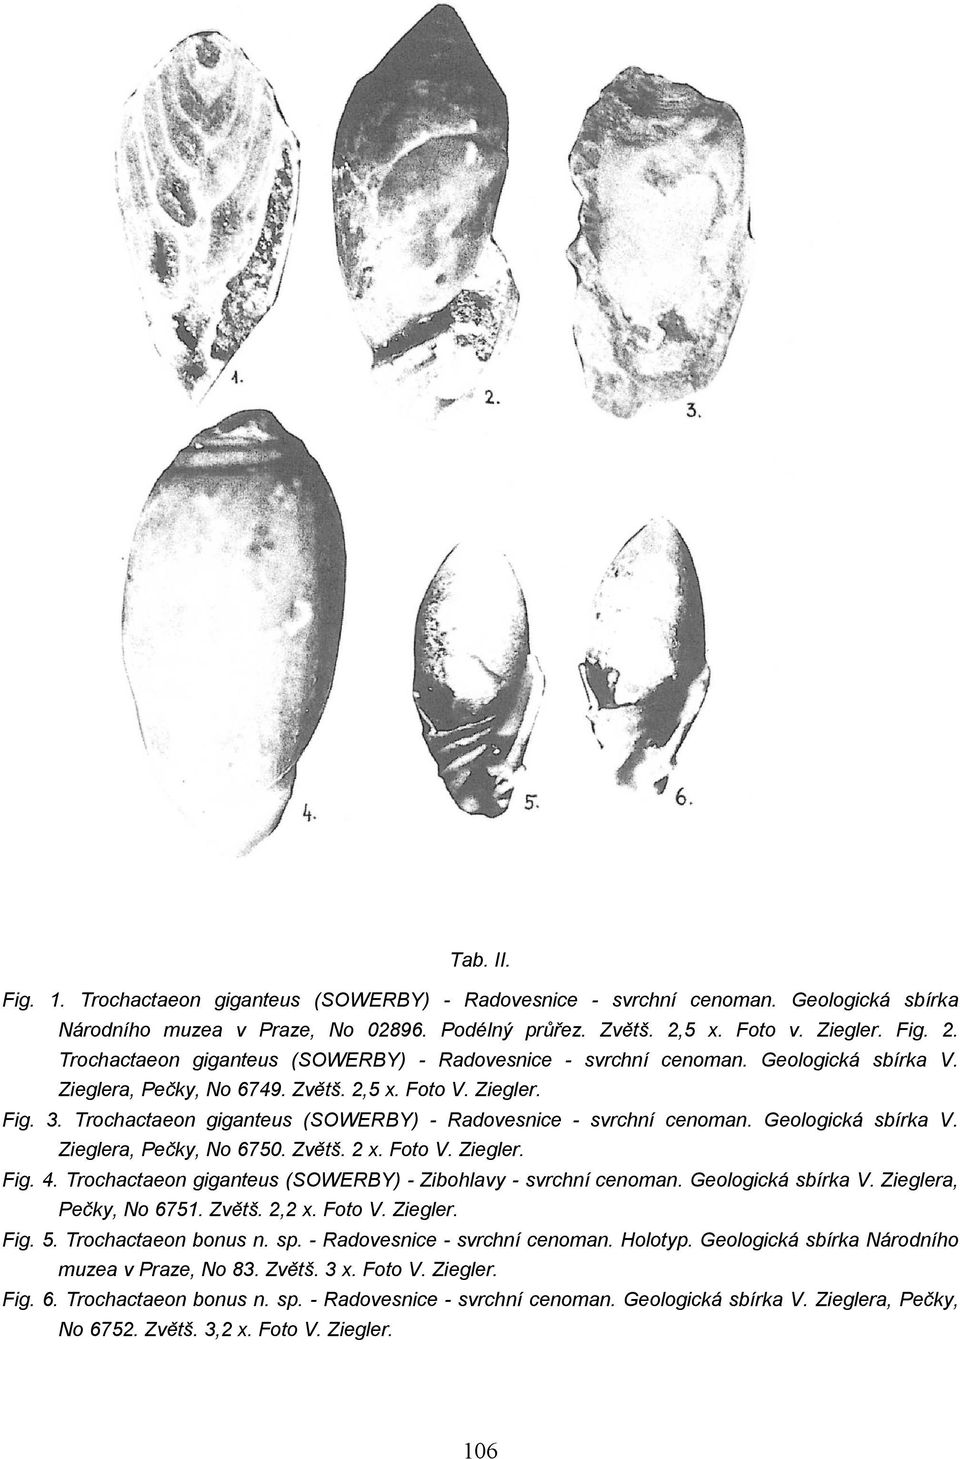 Trochactaeon giganteus (SOWERBY) - Radovesnice - svrchní cenoman. Geologická sbírka V. Zieglera, Pečky, No 6750. Zvětš. 2 x. Foto V. Ziegler. Fig. 4.